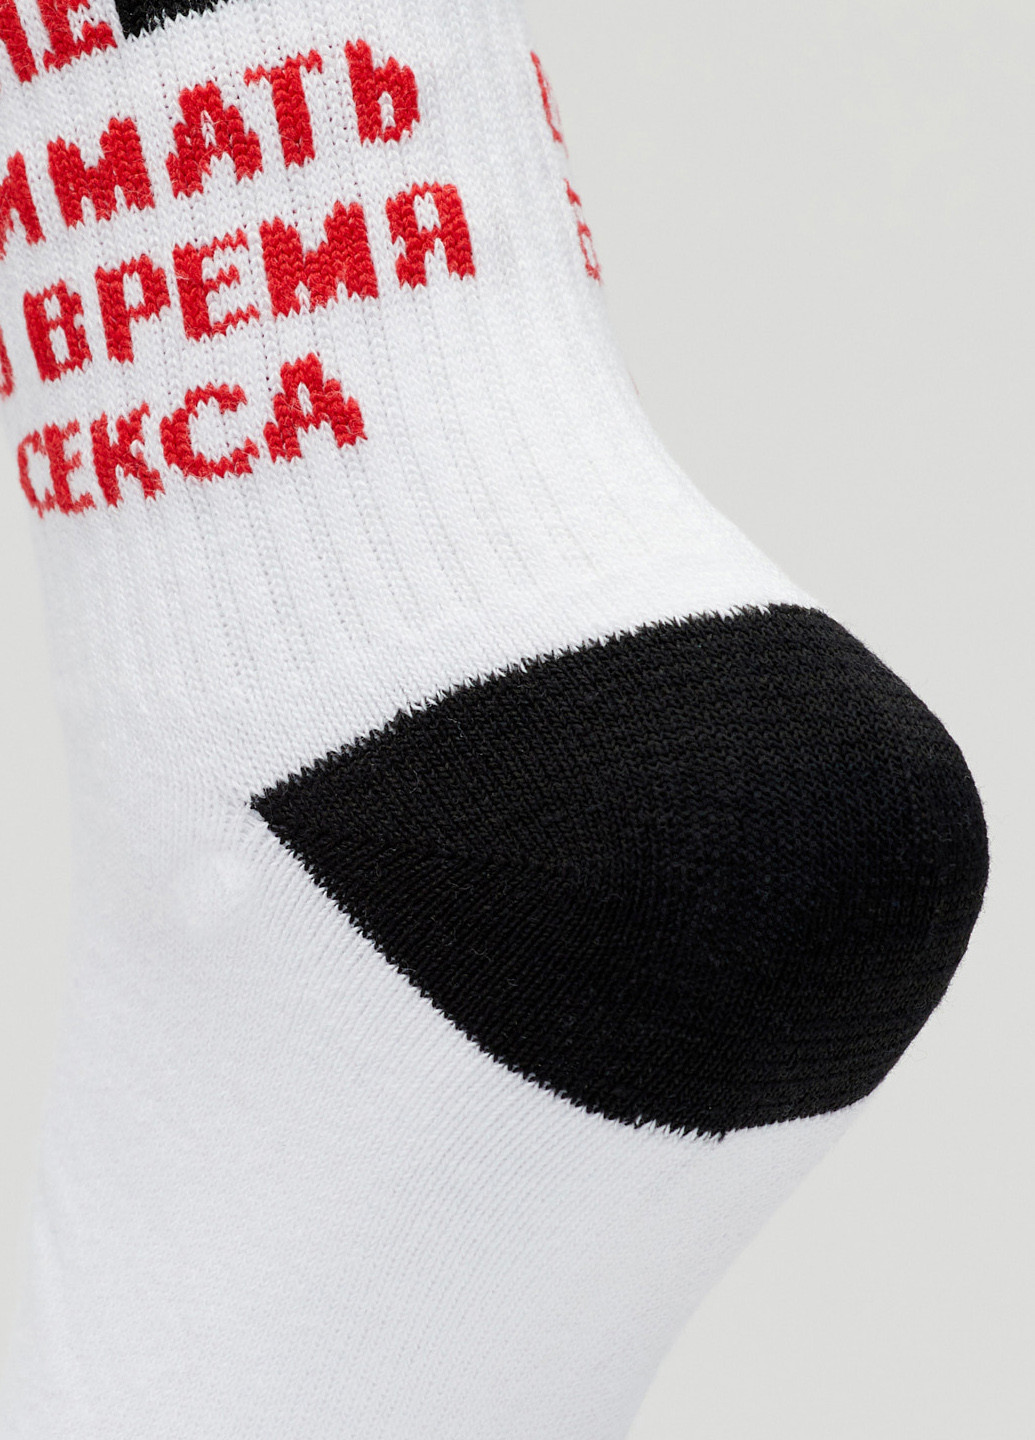 Шкарпетки Чи не знімати Rock'n'socks білі повсякденні